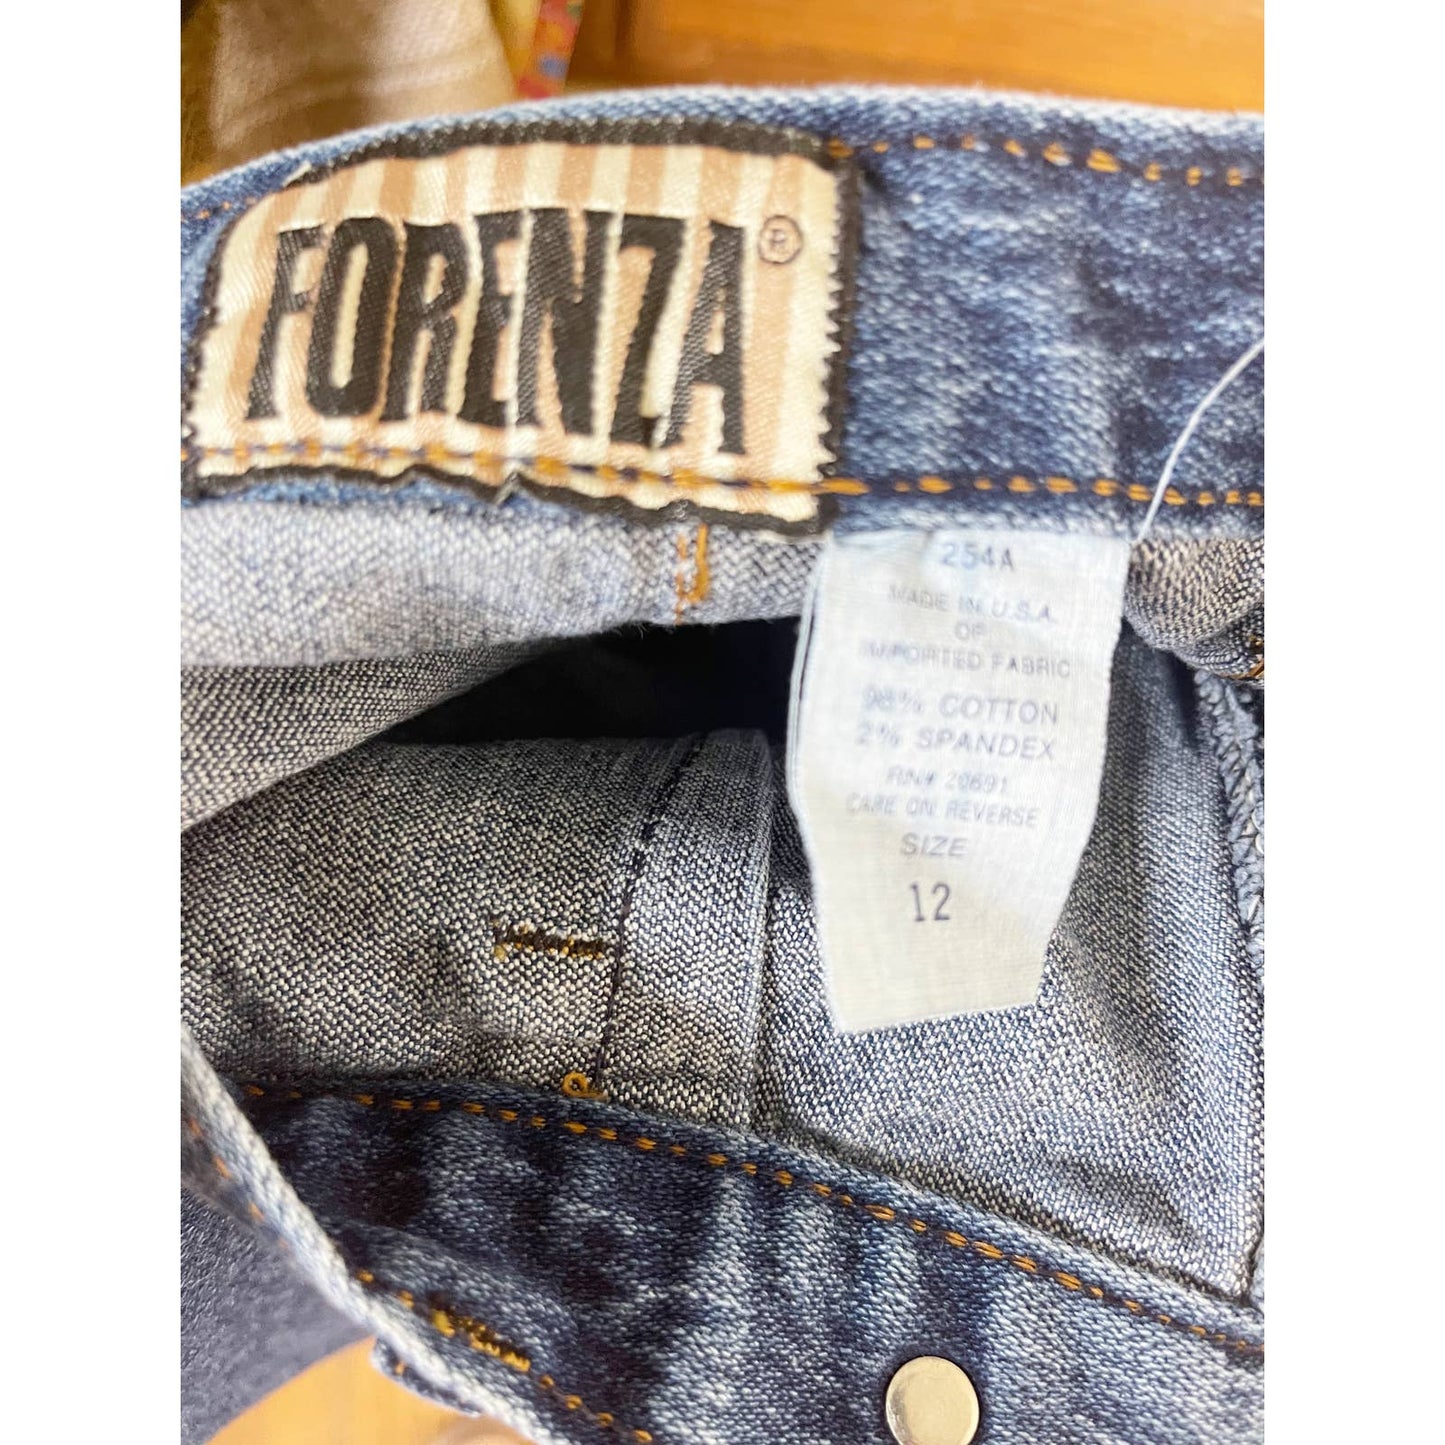 ForenzaVintage 1980s Forenza Stirrup Bottom High Rise Blue Jeans - Mom Jeans - Wedge - Black Dog Vintage